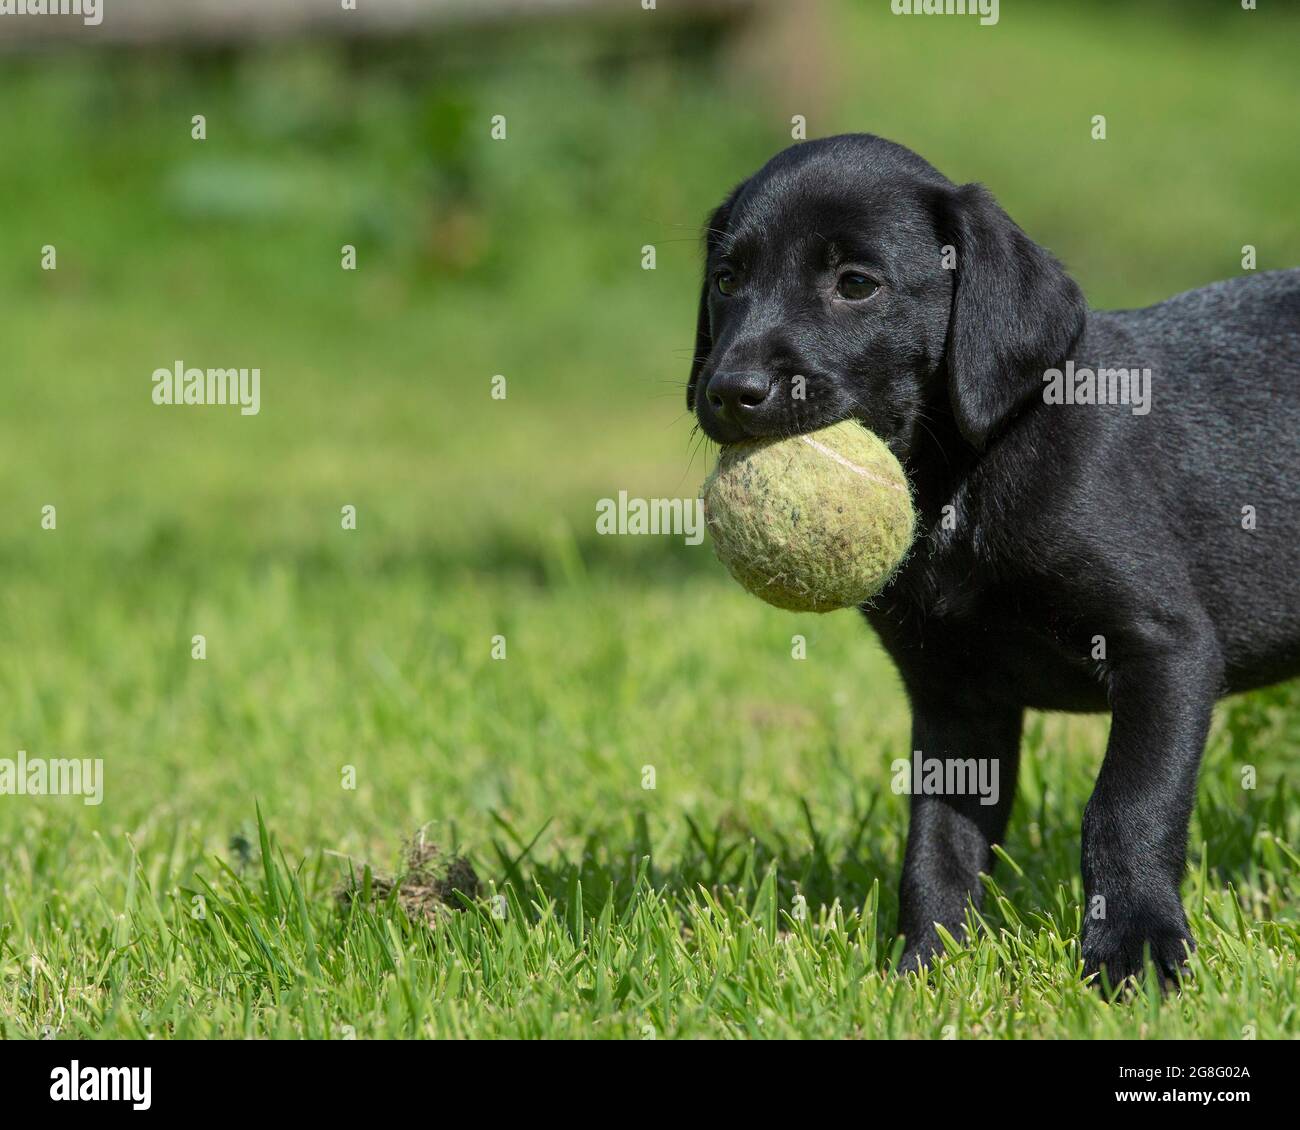 Labrador puppy carrying a tennis ball Stock Photo